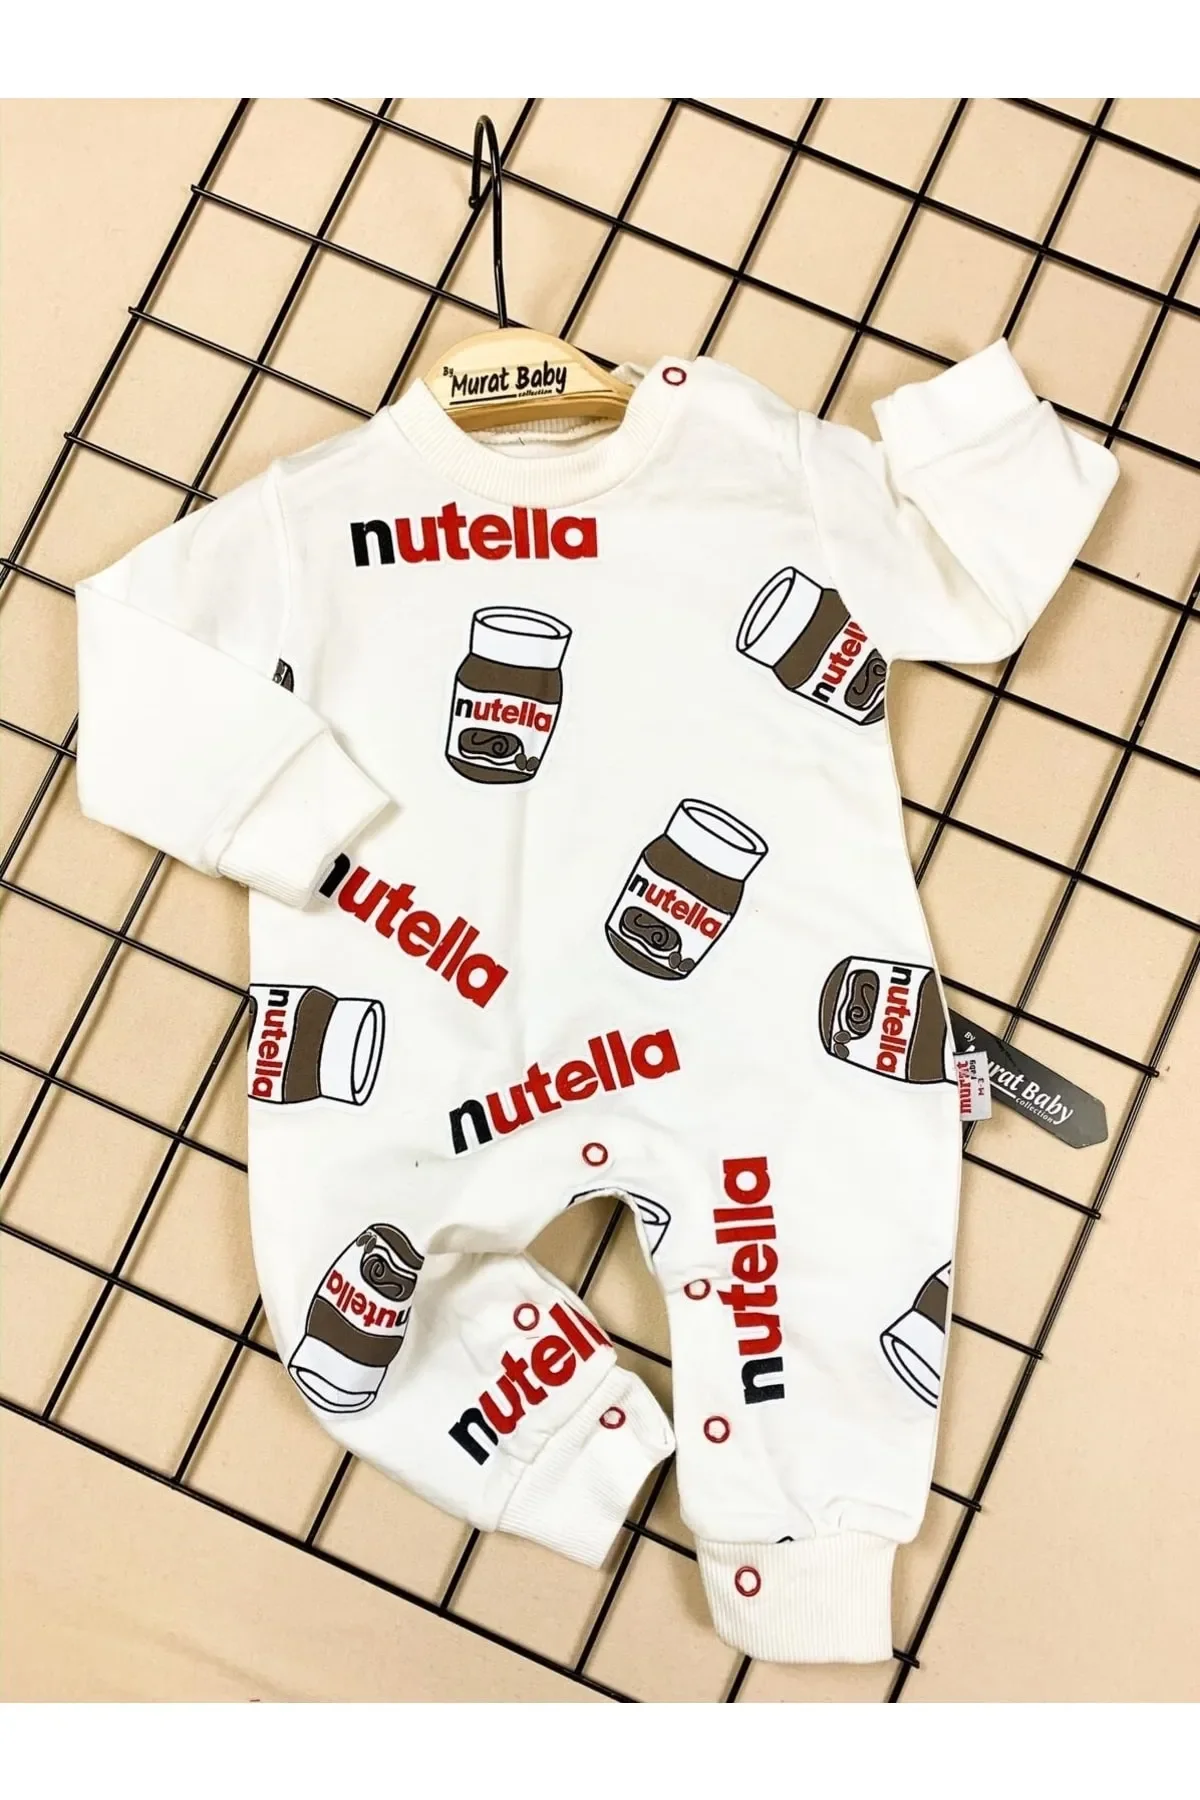 nutella-macacao-macio-do-recem-nascido-roupa-de-algodao-nutella-baby-kinder-nova-temporada